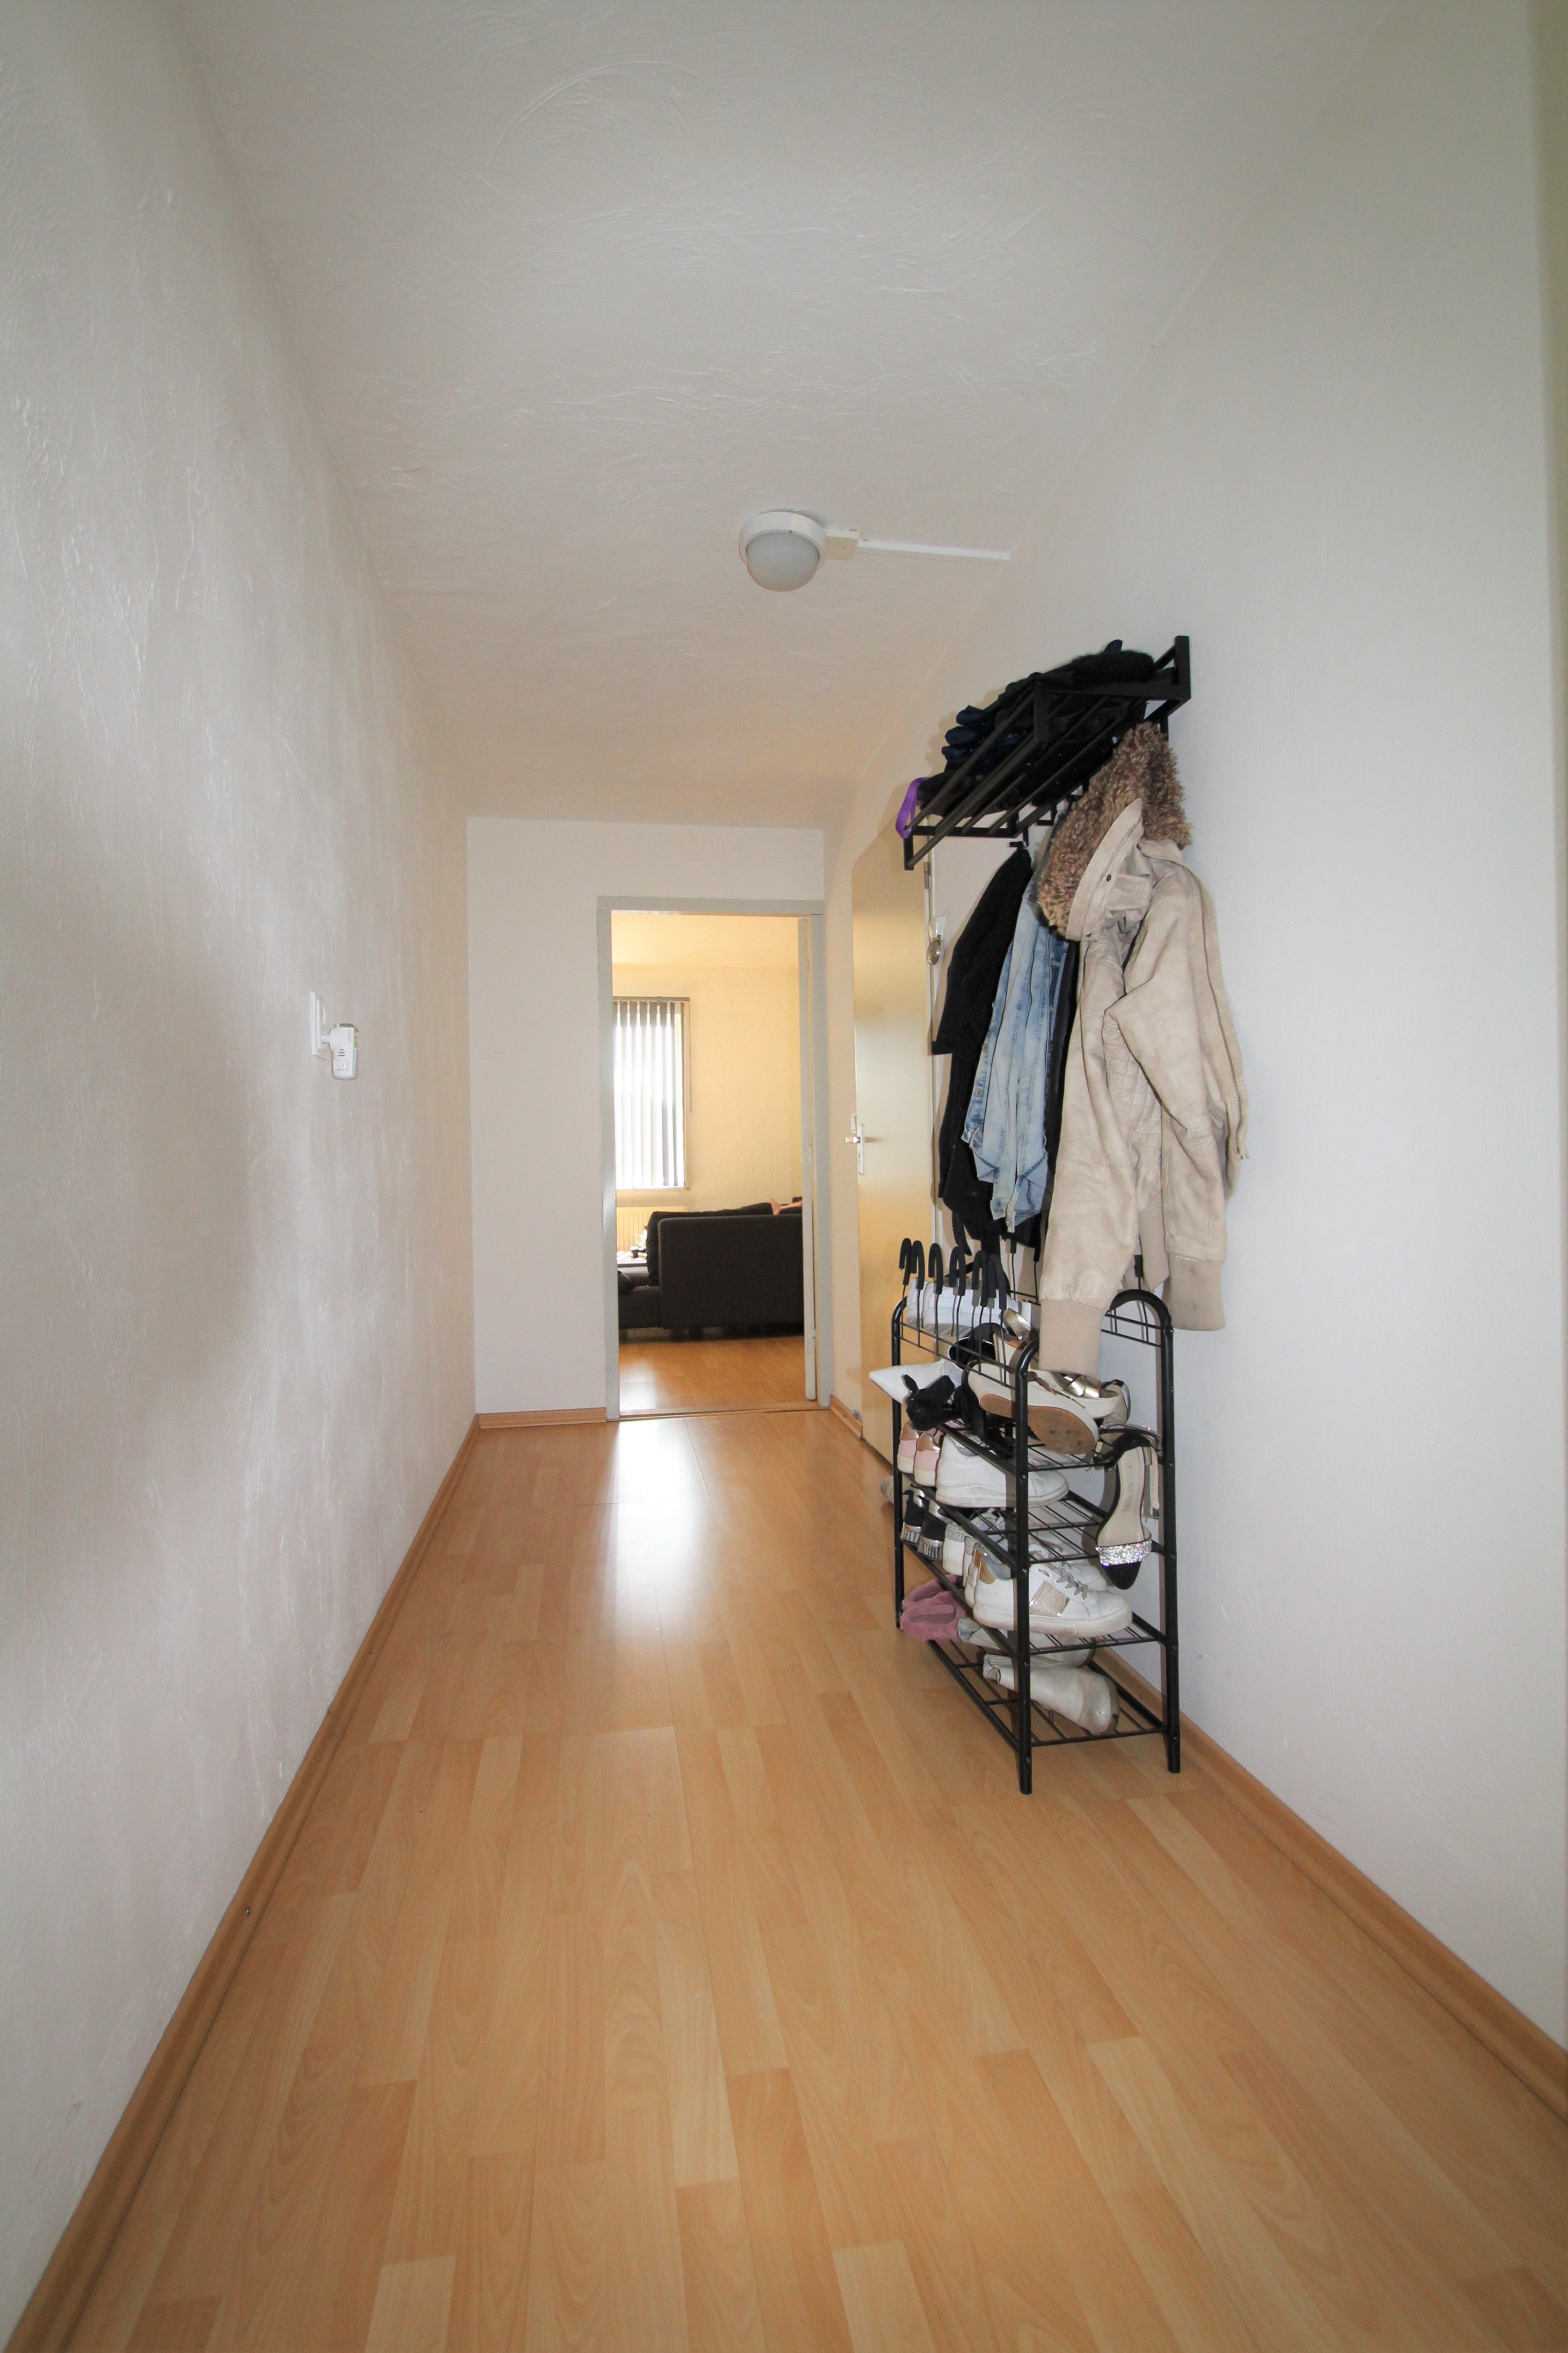 Woning / appartement - Echt - Kapelaan Goossensstraat 12 a-b-c